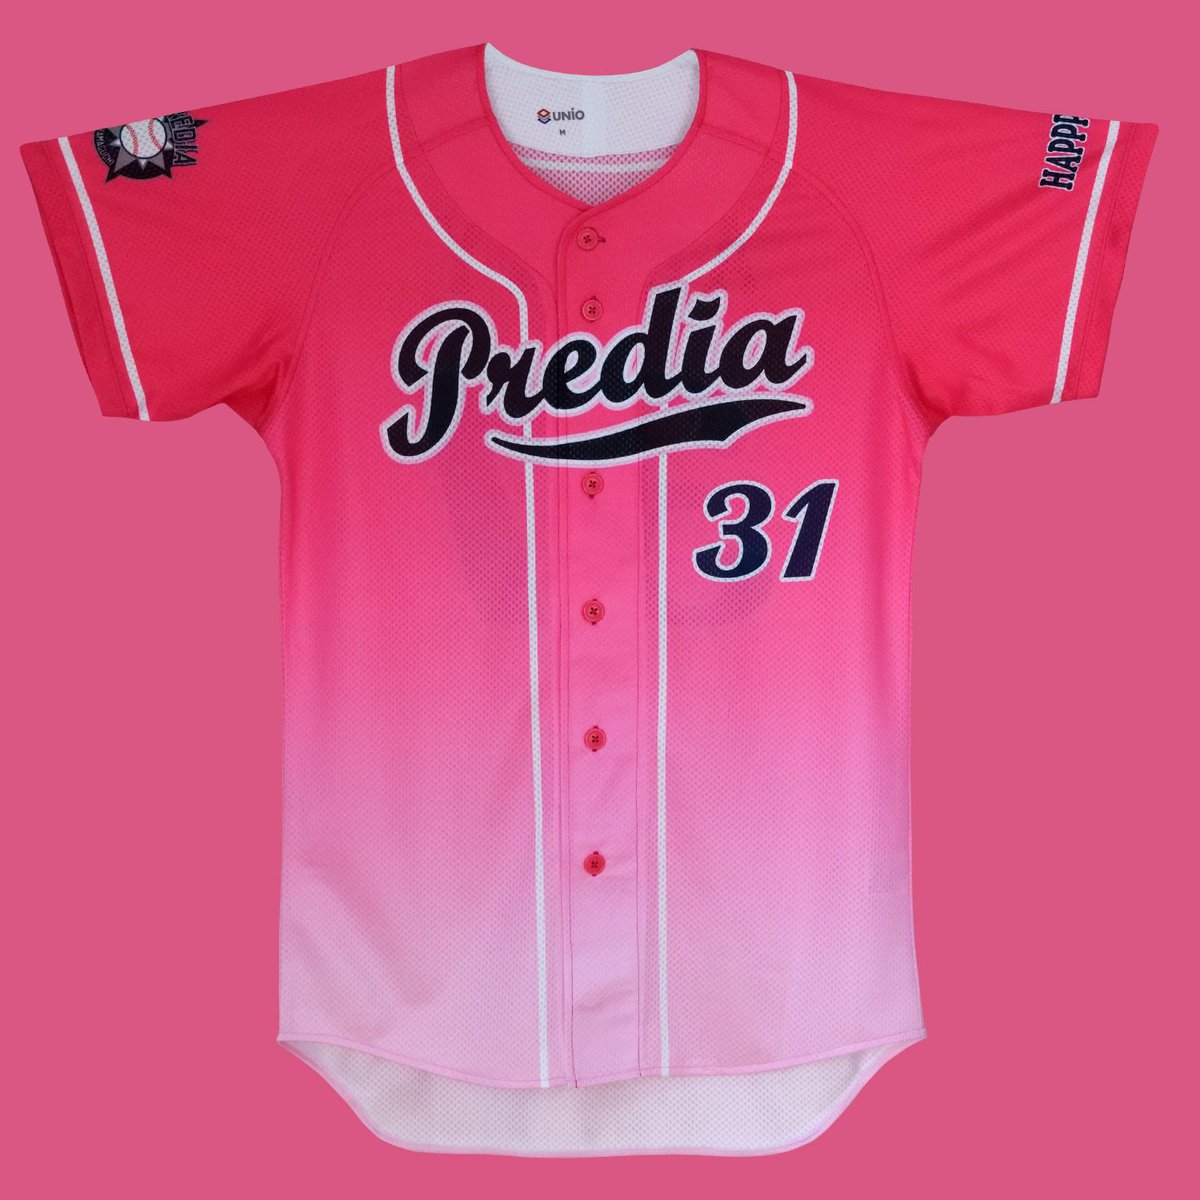 Unio Pa Twitter T Co Xqcnsrssqd 白とピンクのグラデーションが特徴的な女性 にも人気の出そうなデザインと配色の野球ユニフォームです Baseball Baseballlife 野球 野球部 野球好き 野球用品 野球ユニフォーム 野球ユニホーム ユニフォーム Unio